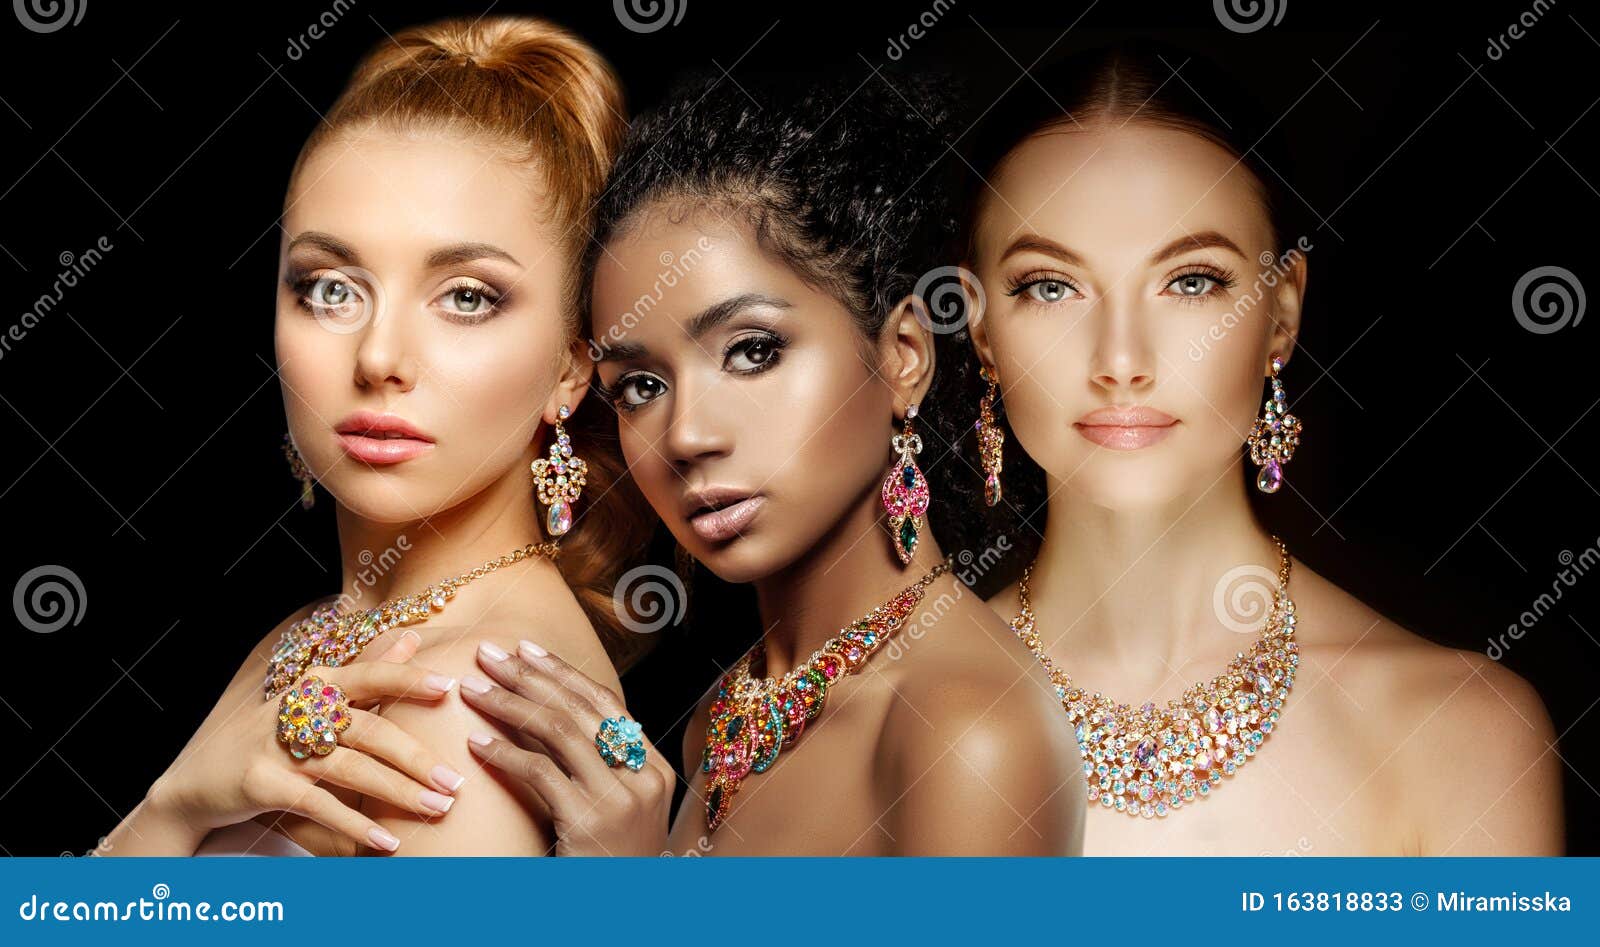 Oproepen zweer Bevoorrecht Mooie Drie Modellen Meisjes Met Een Serie Juwelen Luxe Meisjes in Sieraden:  Eearringen, Necklace, En Ring Vrouwen in Juwelen Stock Afbeelding - Image  of achtergrond, juwelier: 163818833